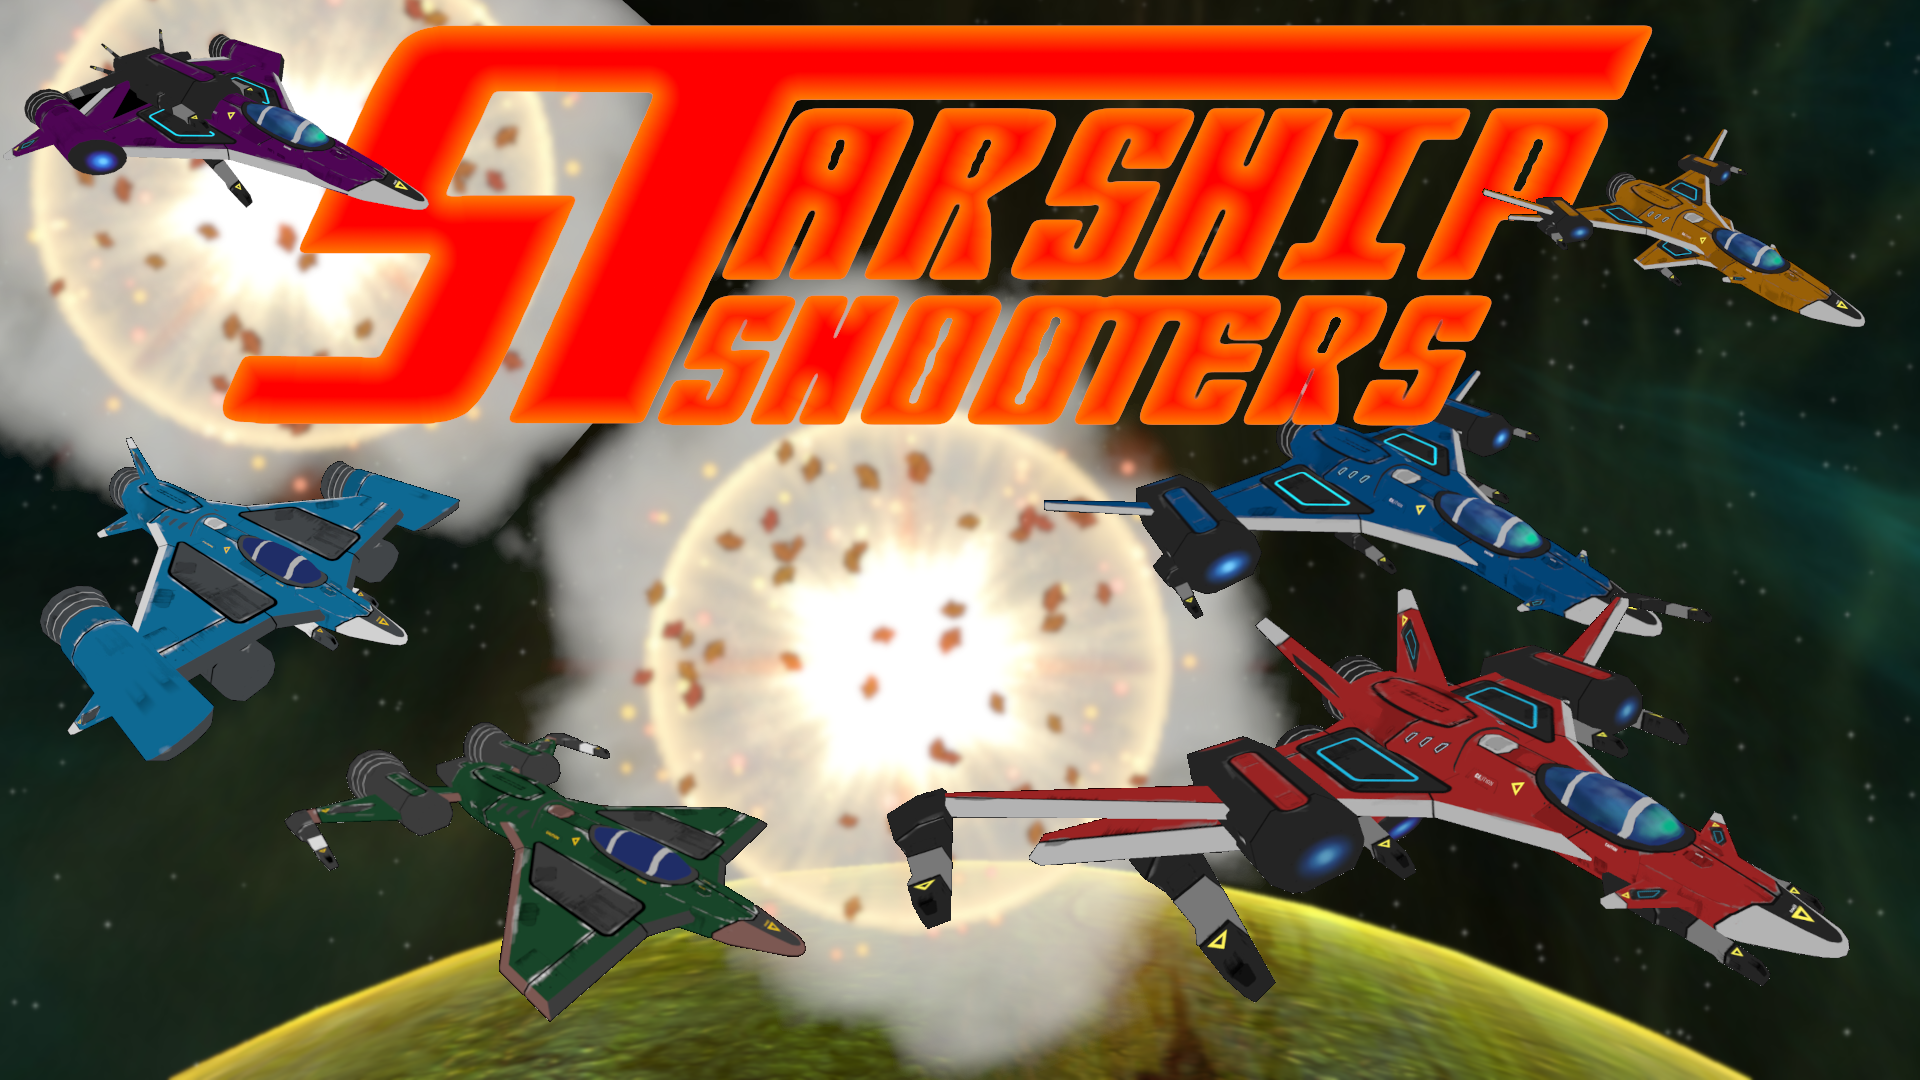 Starship Shooters